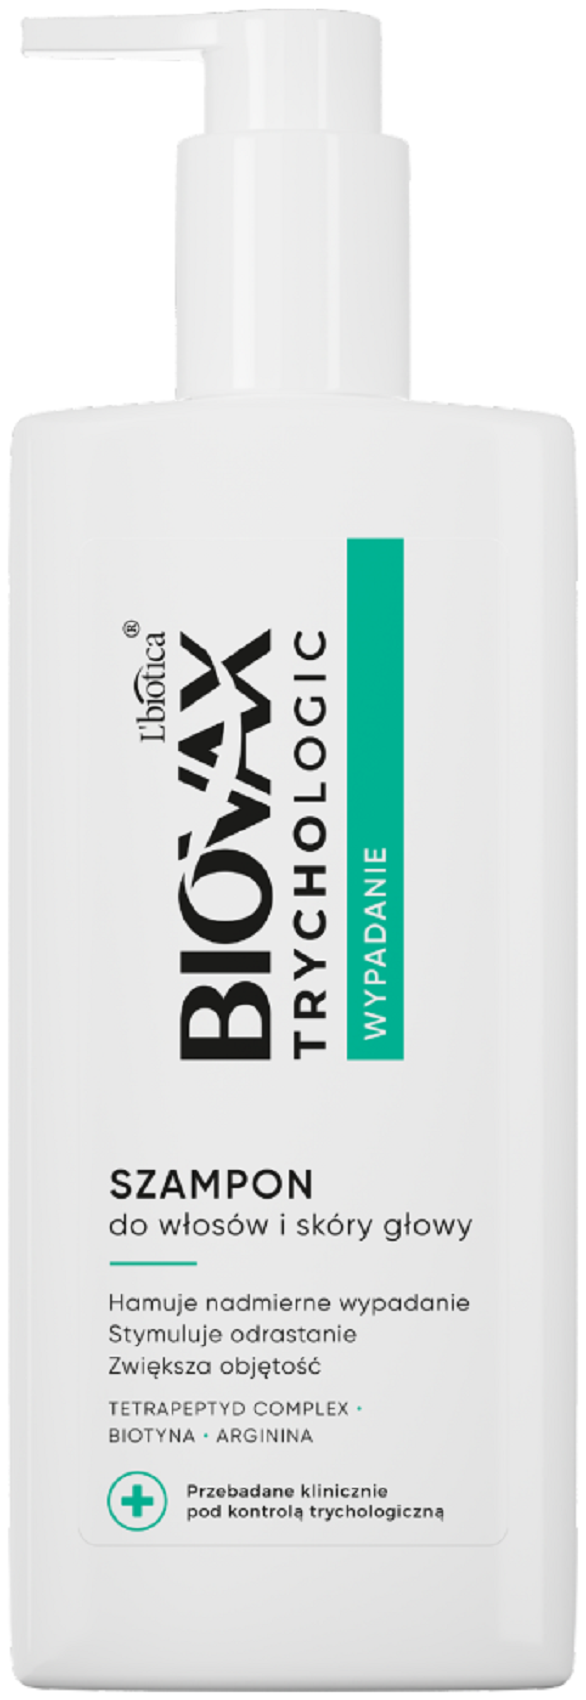 biovax glamour szampon opinie